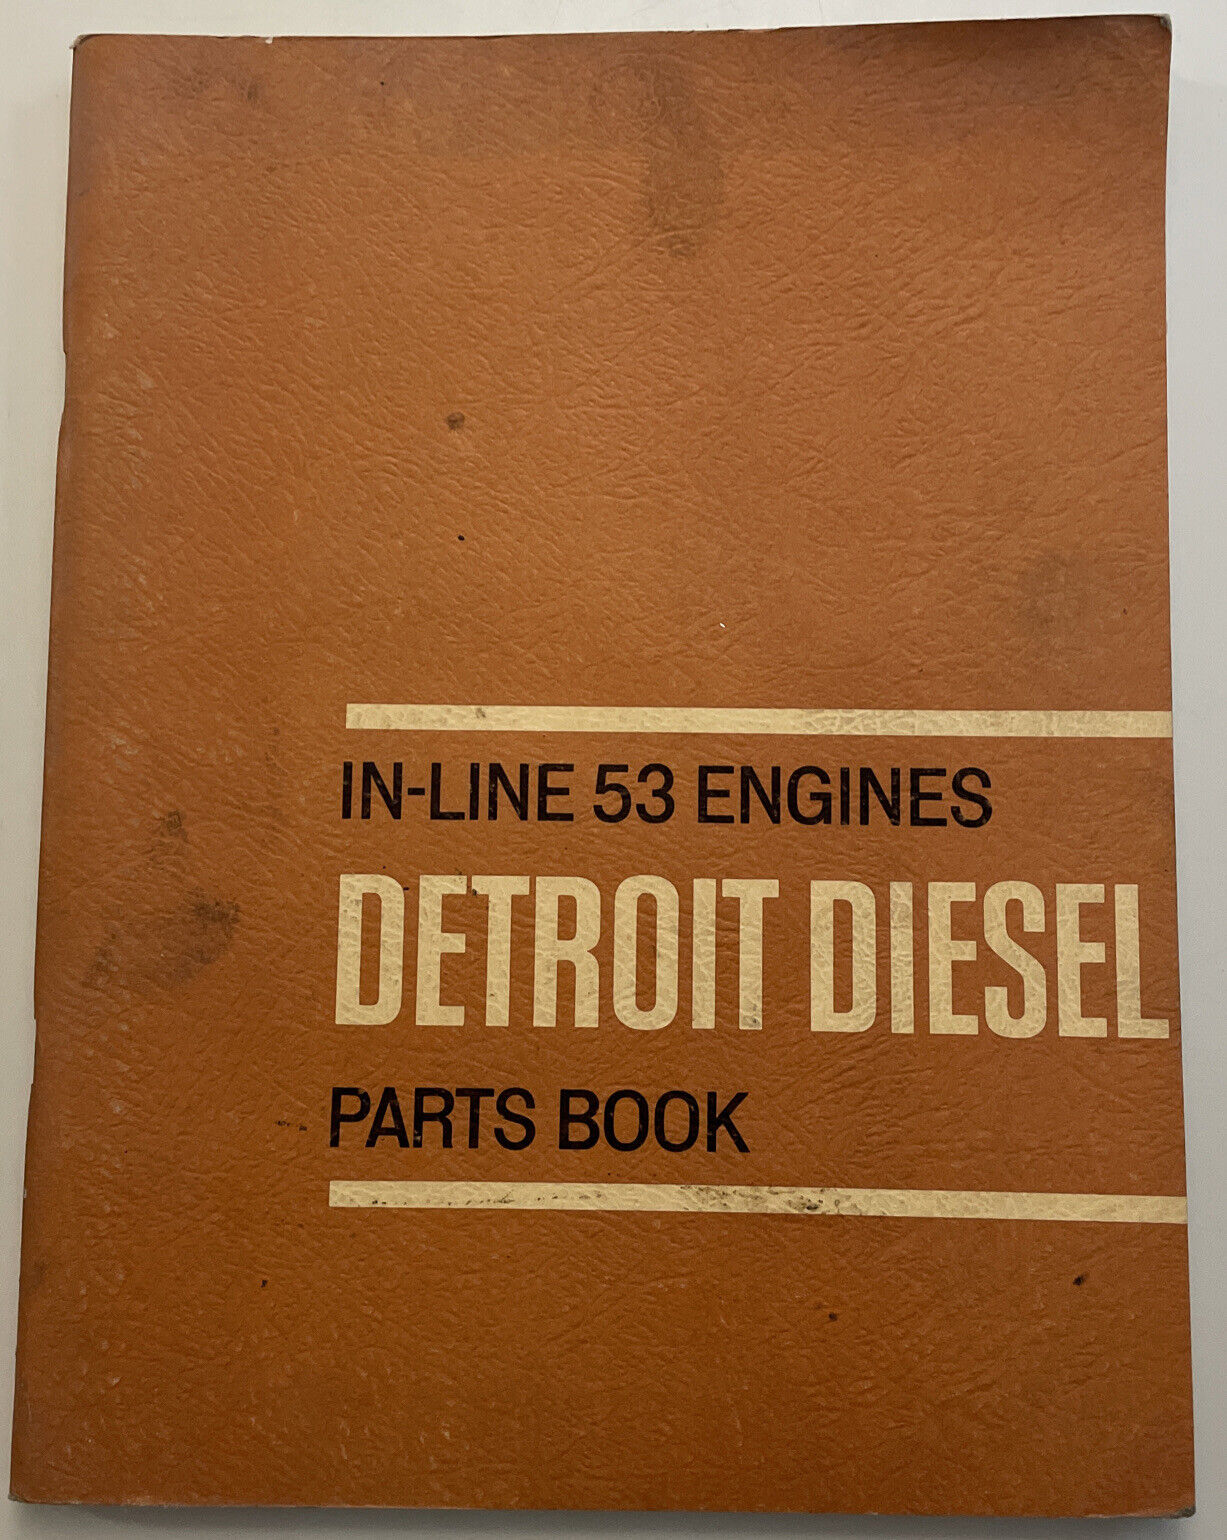 1966 General Motors GM Detroit Diesel In-Line 53 Engines Parts Book Manual